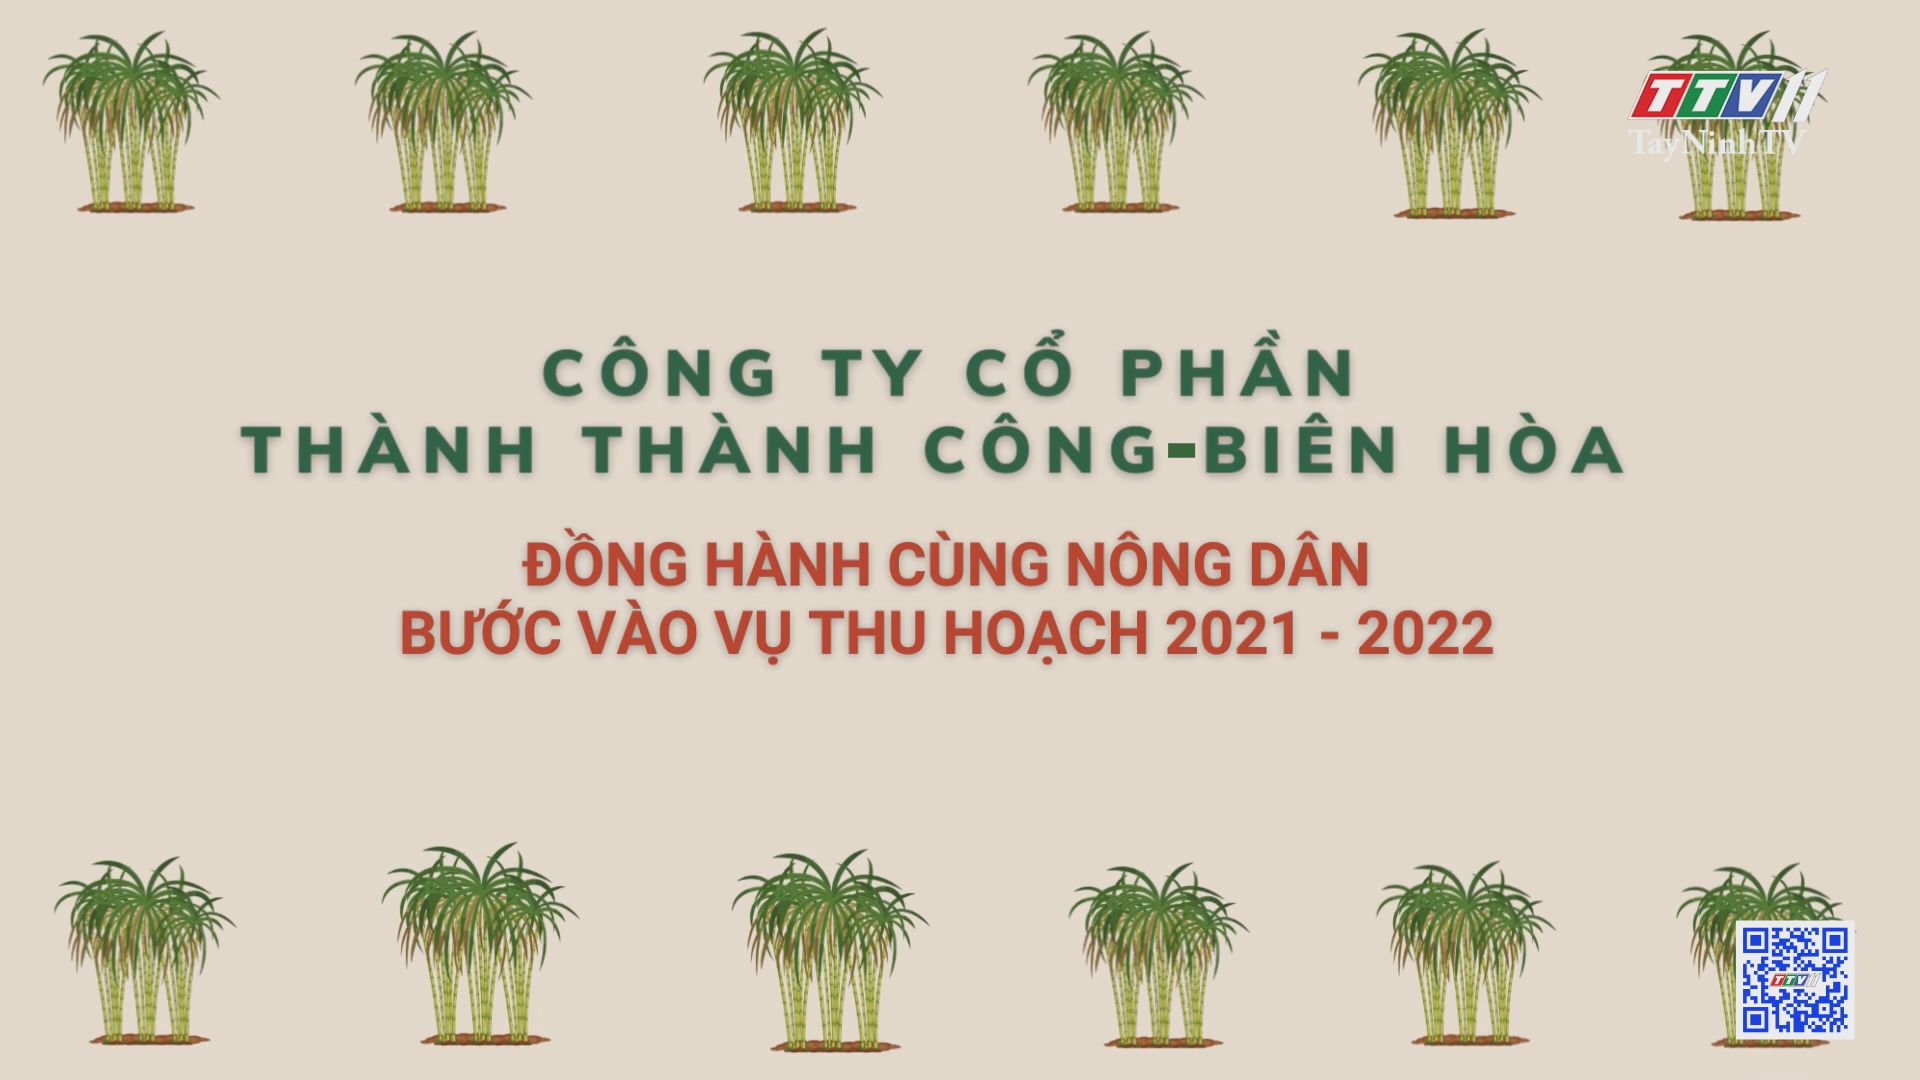 CTY CP Thành Thành Công-Biên Hòa đồng hành cùng nông dân bước vào vụ thu hoạch 2021-2022 | CÂY MÍA VIỆT | TayNinhTV